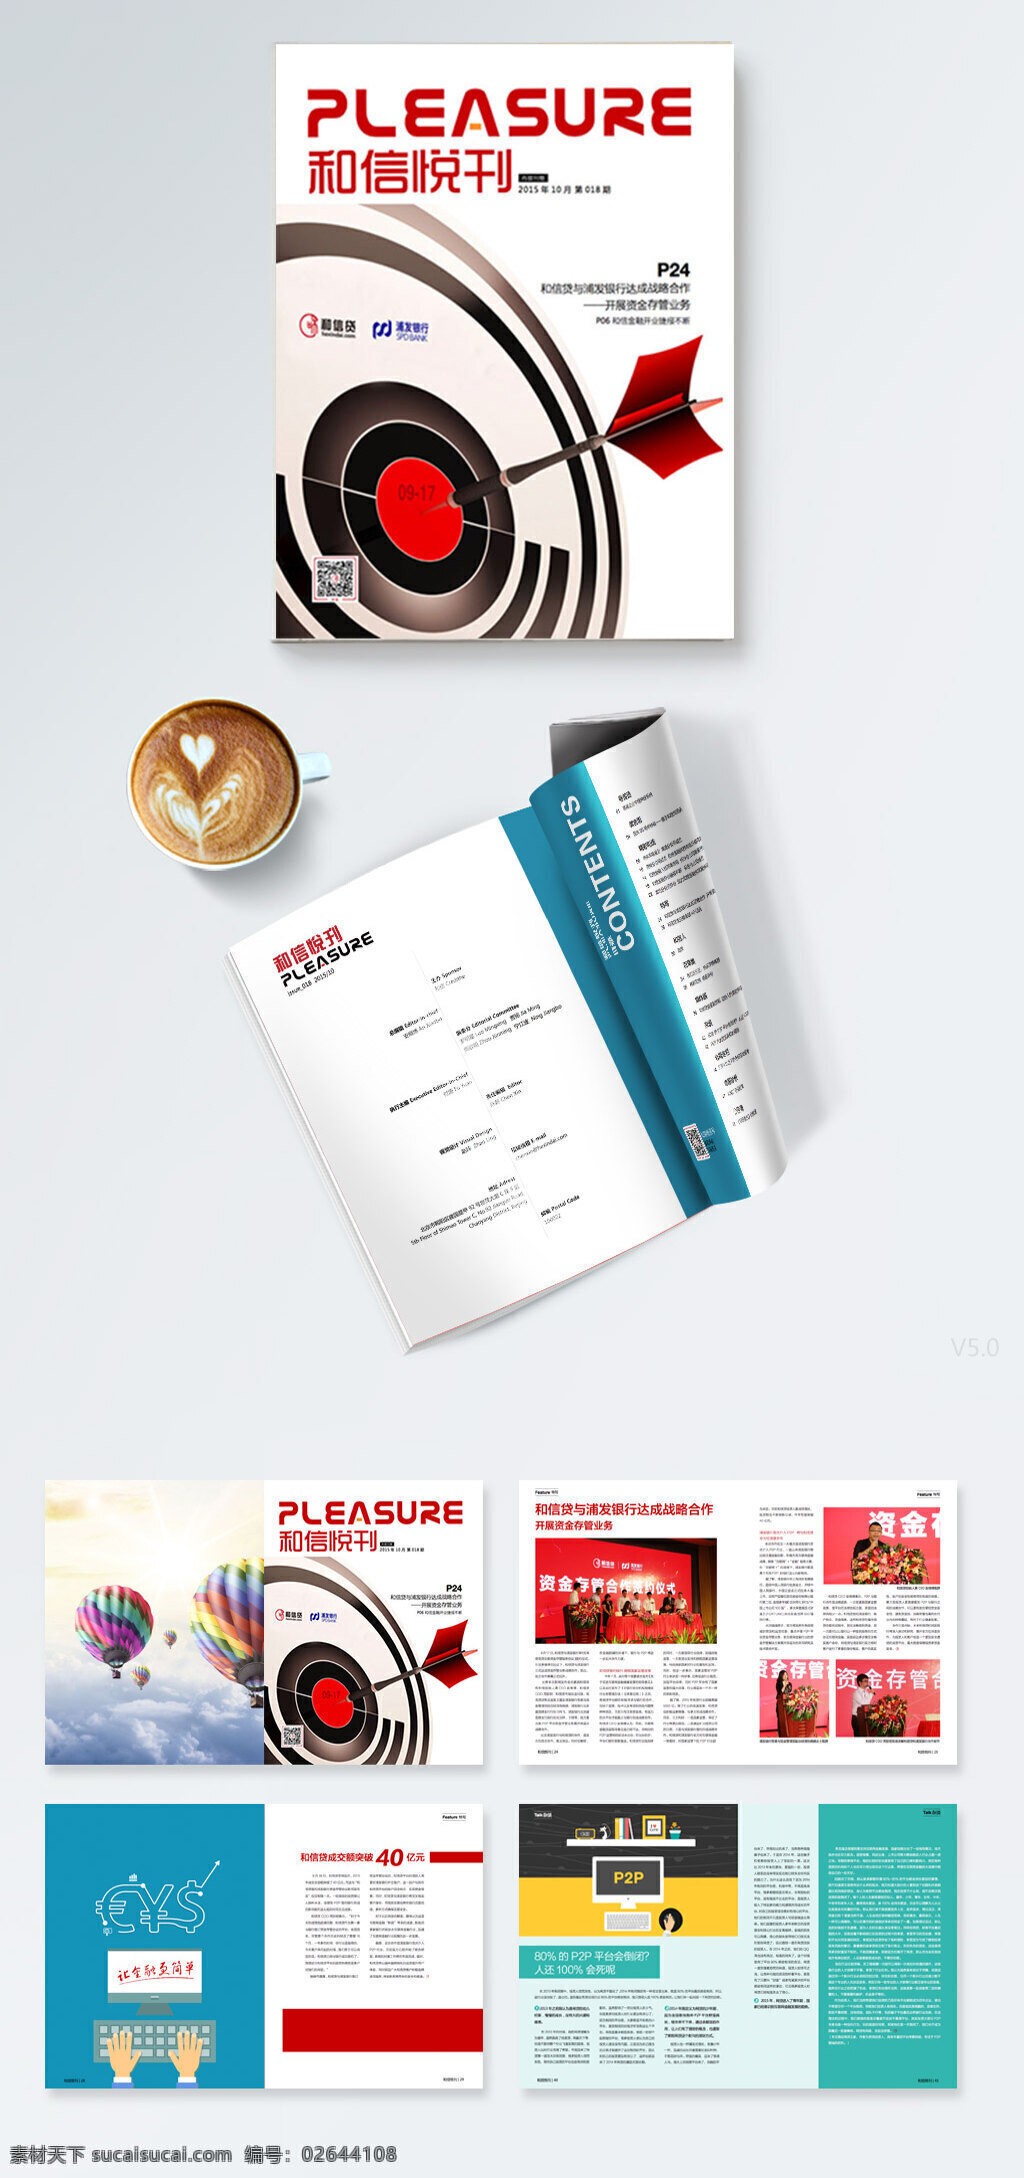 企业 刊物 对开 画册设计 企业刊物 画册 金融公司刊物 p2p 平台 印刷刊物画册